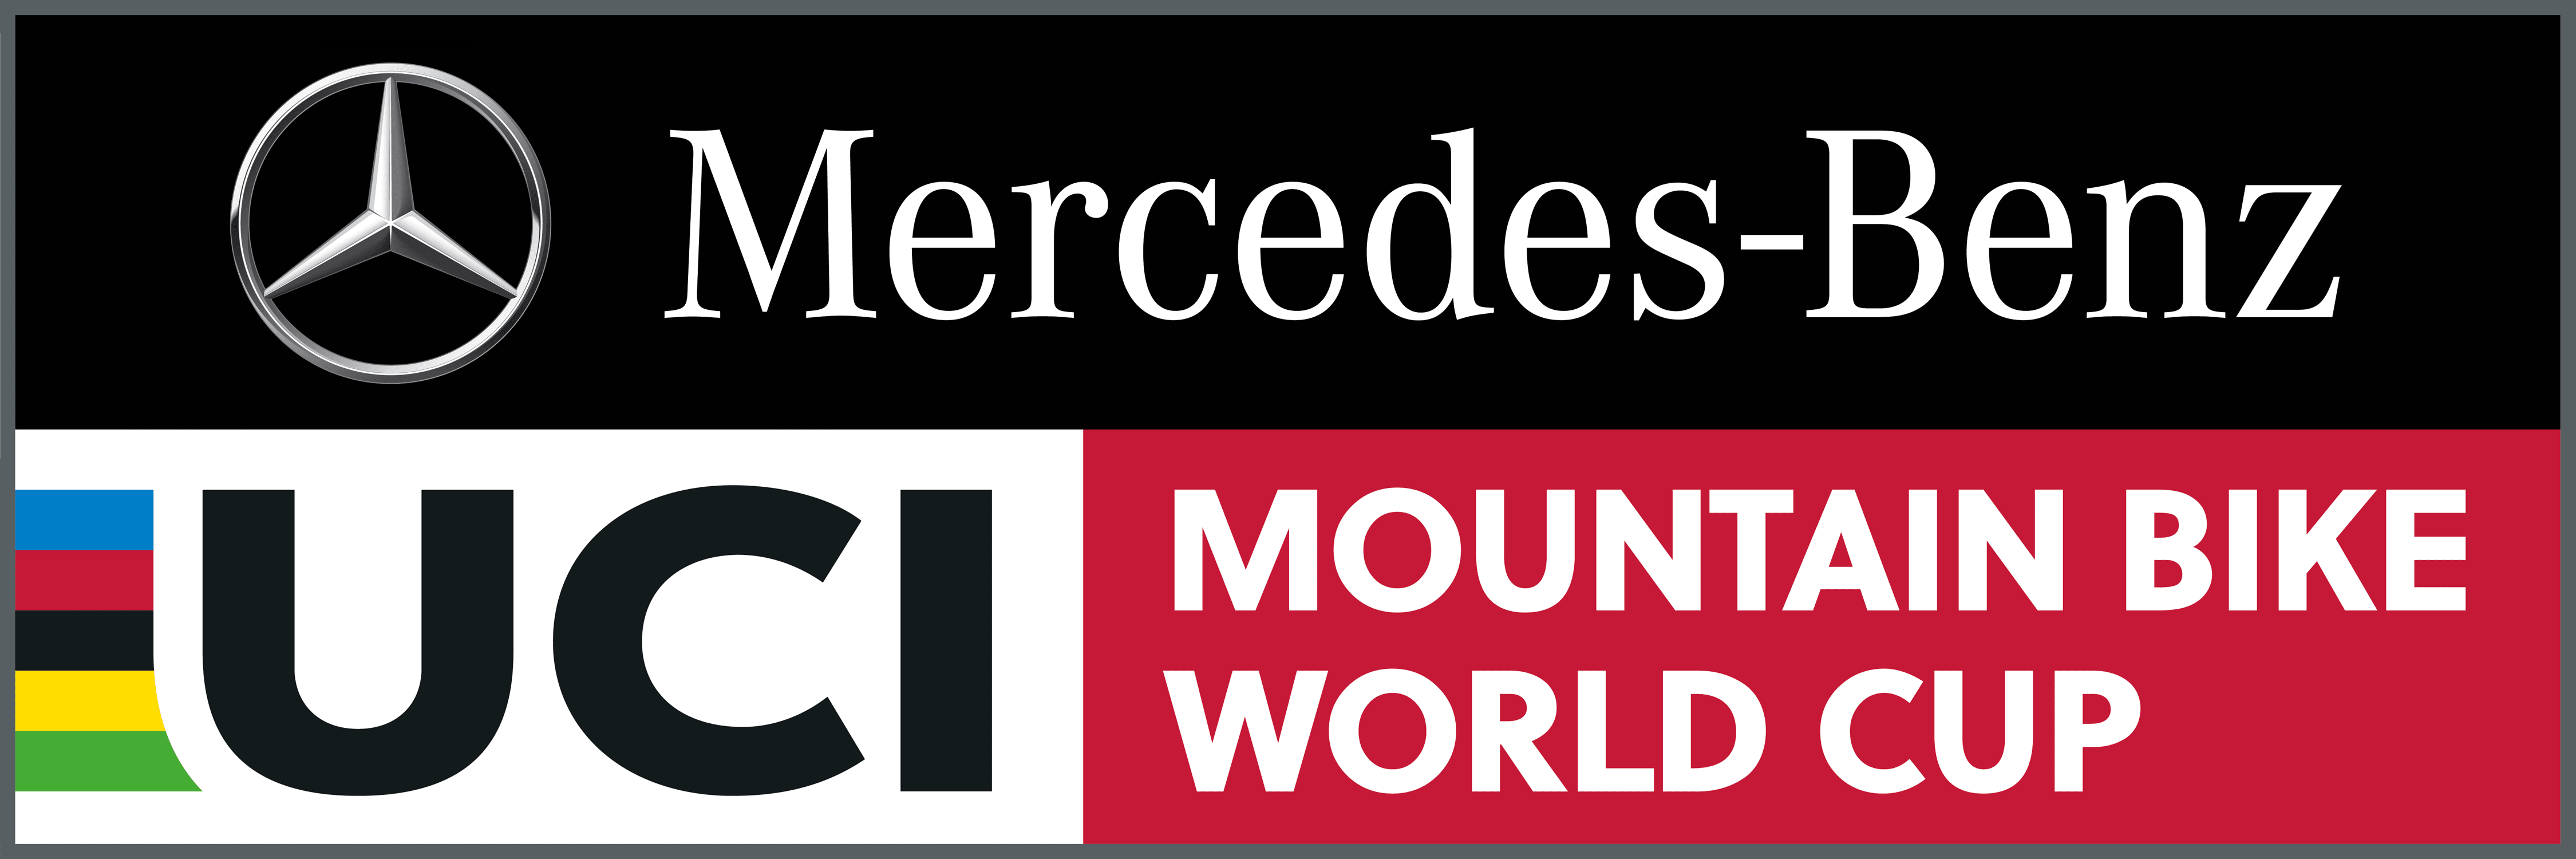 uci-mtb-worldcup-logo